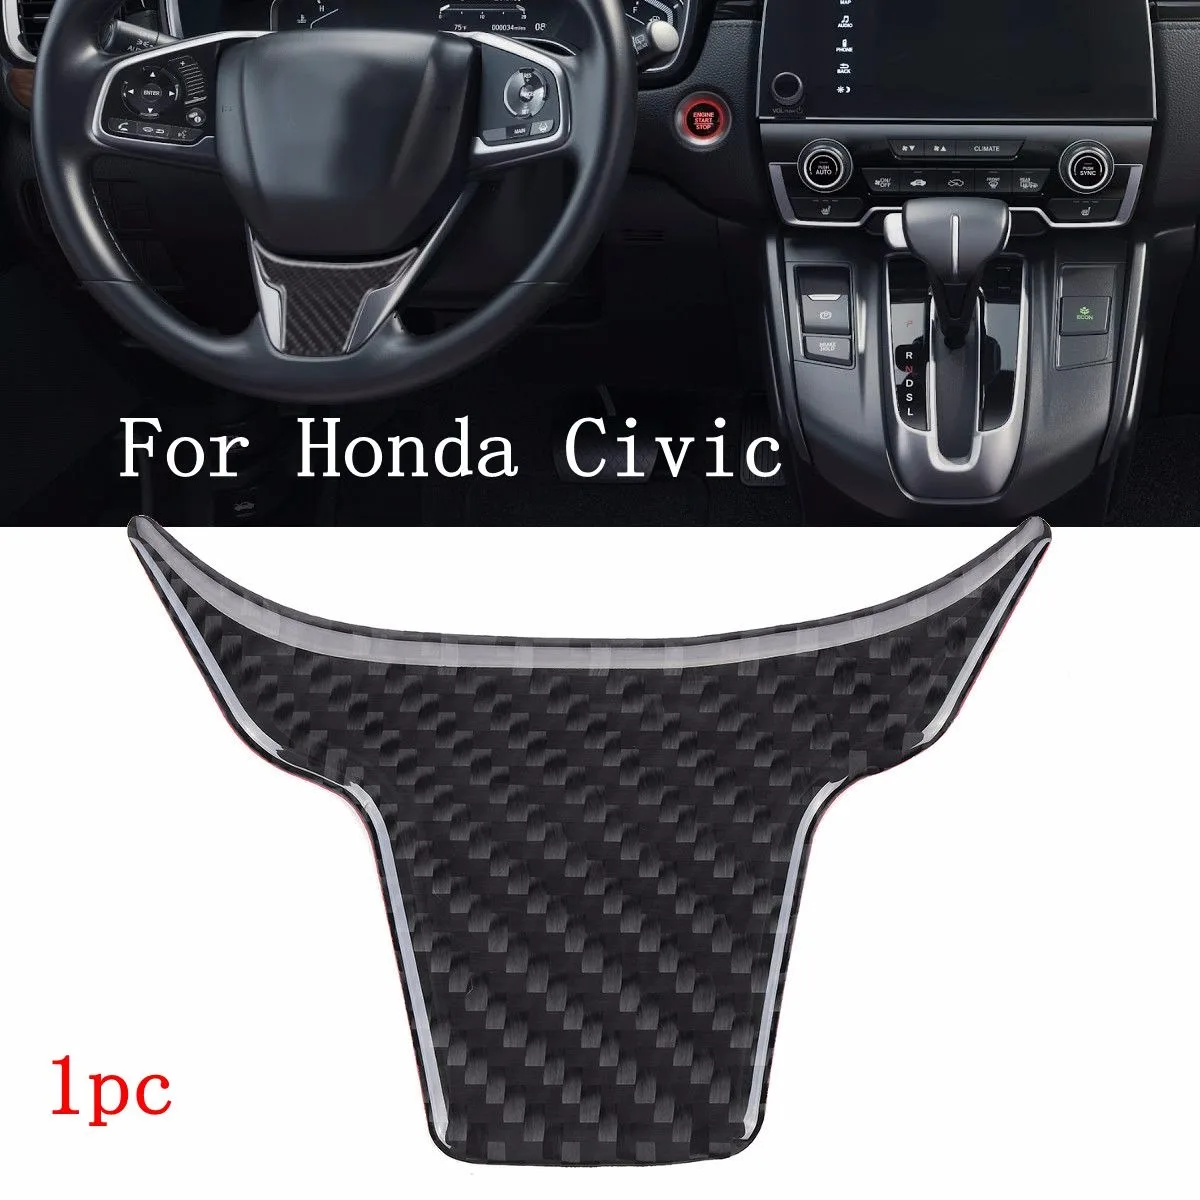 Pcmos 3 шт. Автомобильный интерьер рулевое колесо кнопка переключатель панель Крышка отделка украшения подходит для Honda Civic наклейки на интерьер